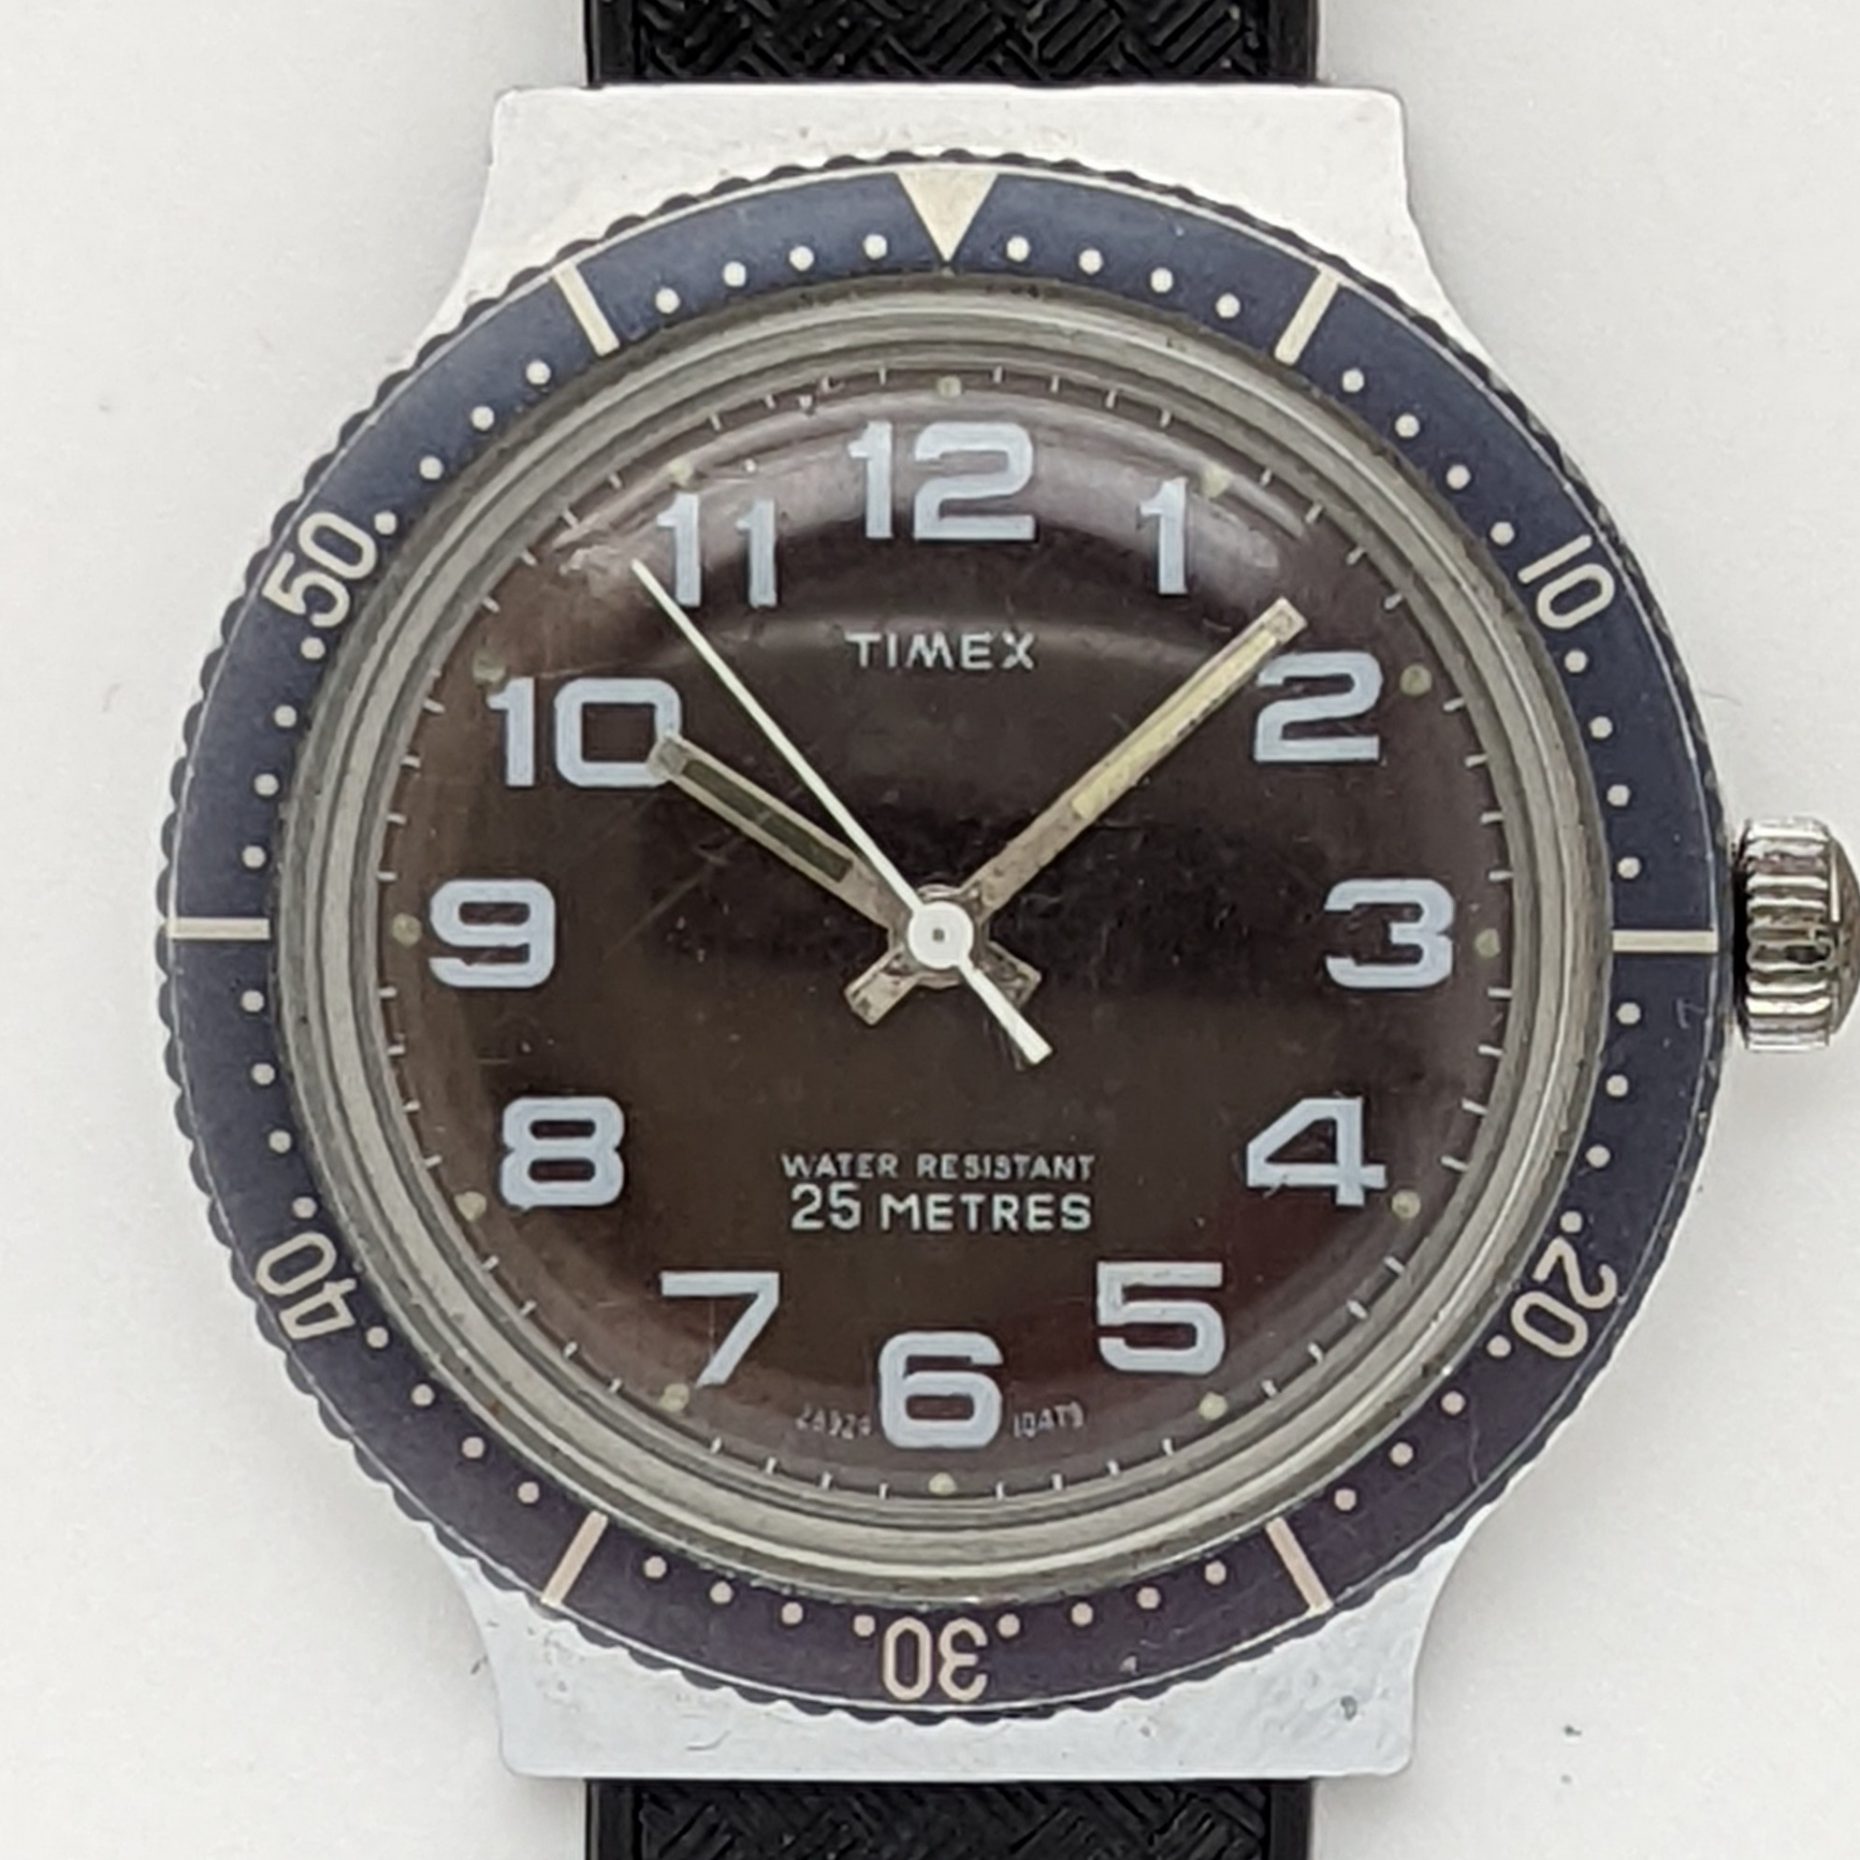 Timex Marlin 28929 10479 [1979] Dive Watch